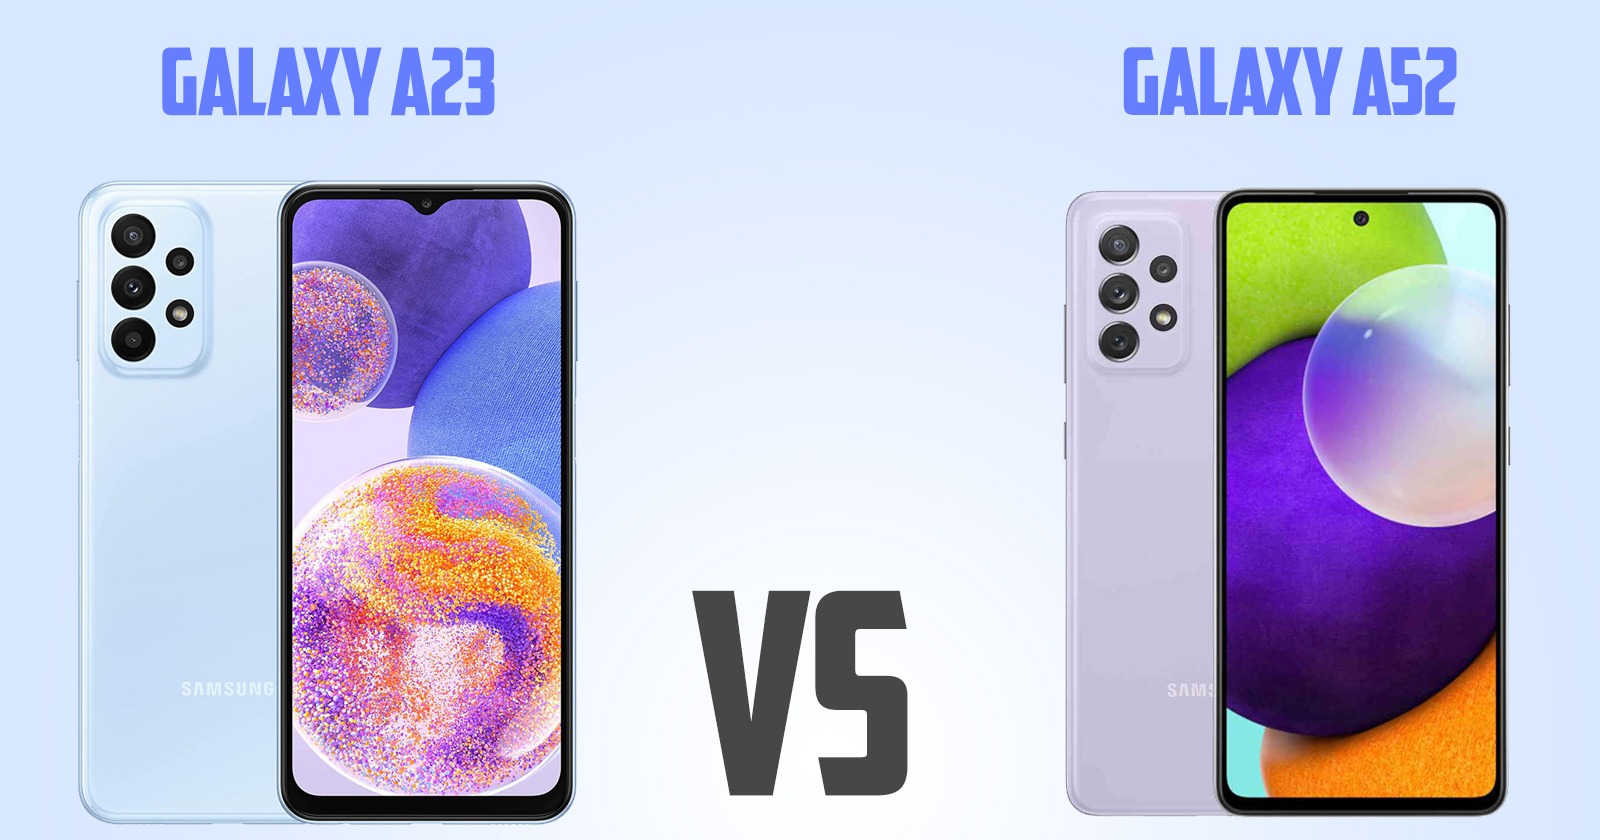 Redmi note 10 pro vs Samsung Galaxy A23